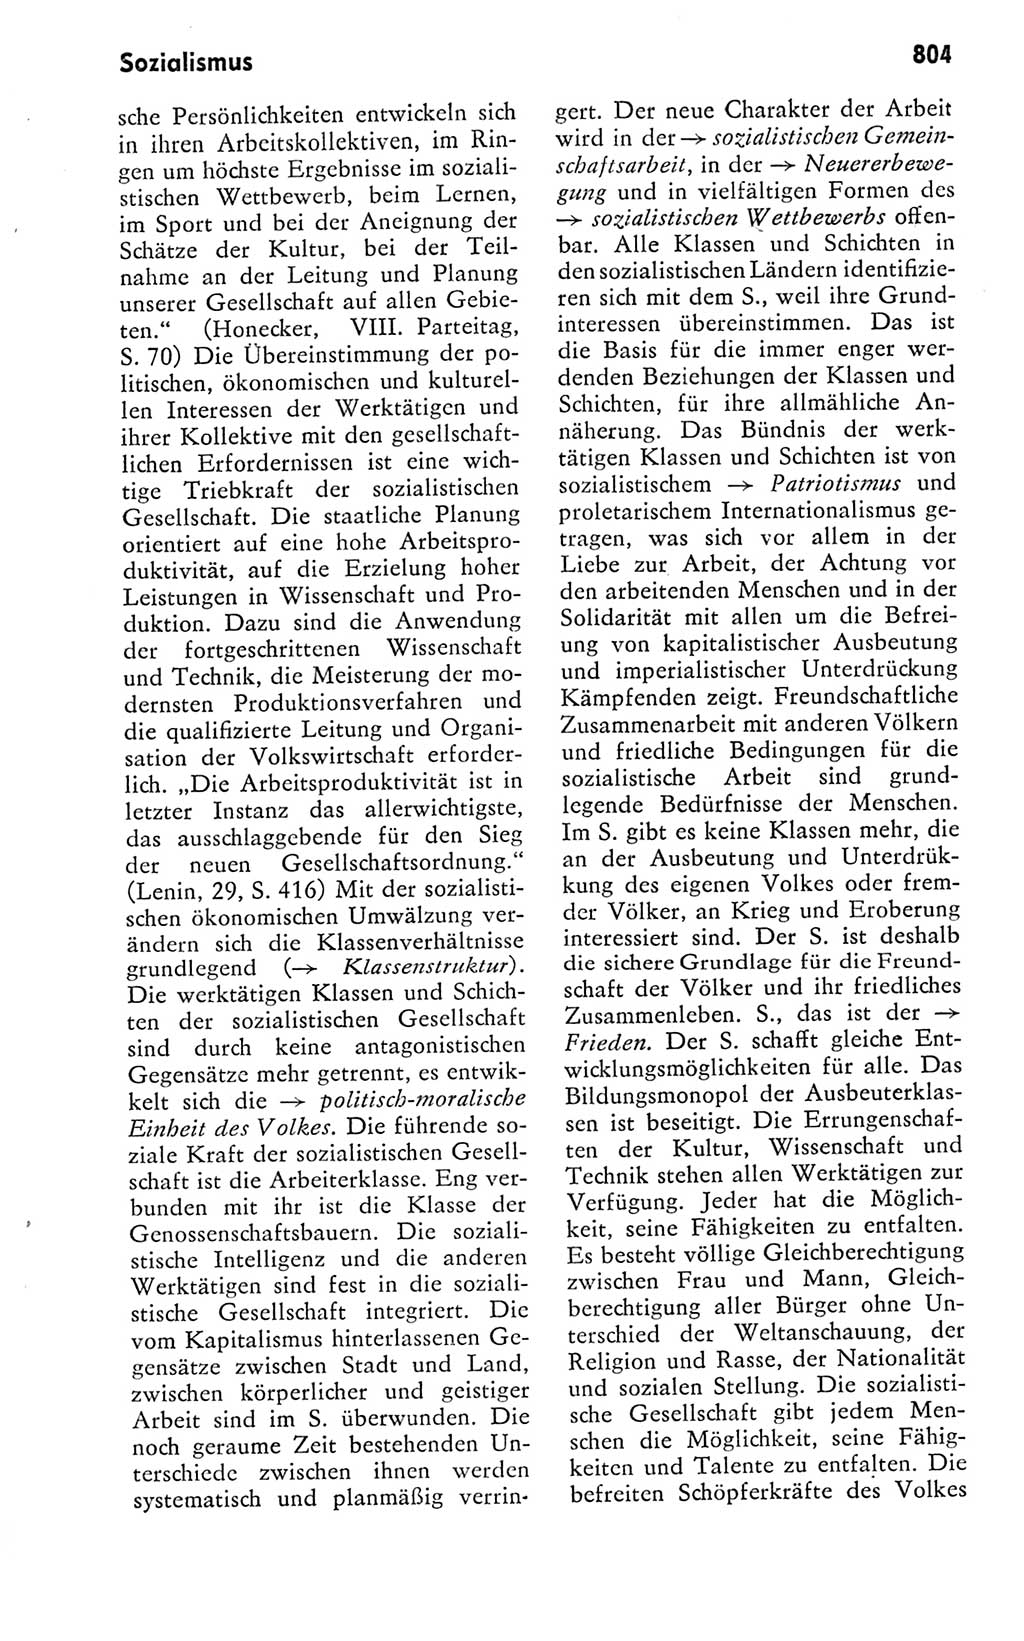 Kleines politisches Wörterbuch [Deutsche Demokratische Republik (DDR)] 1978, Seite 804 (Kl. pol. Wb. DDR 1978, S. 804)